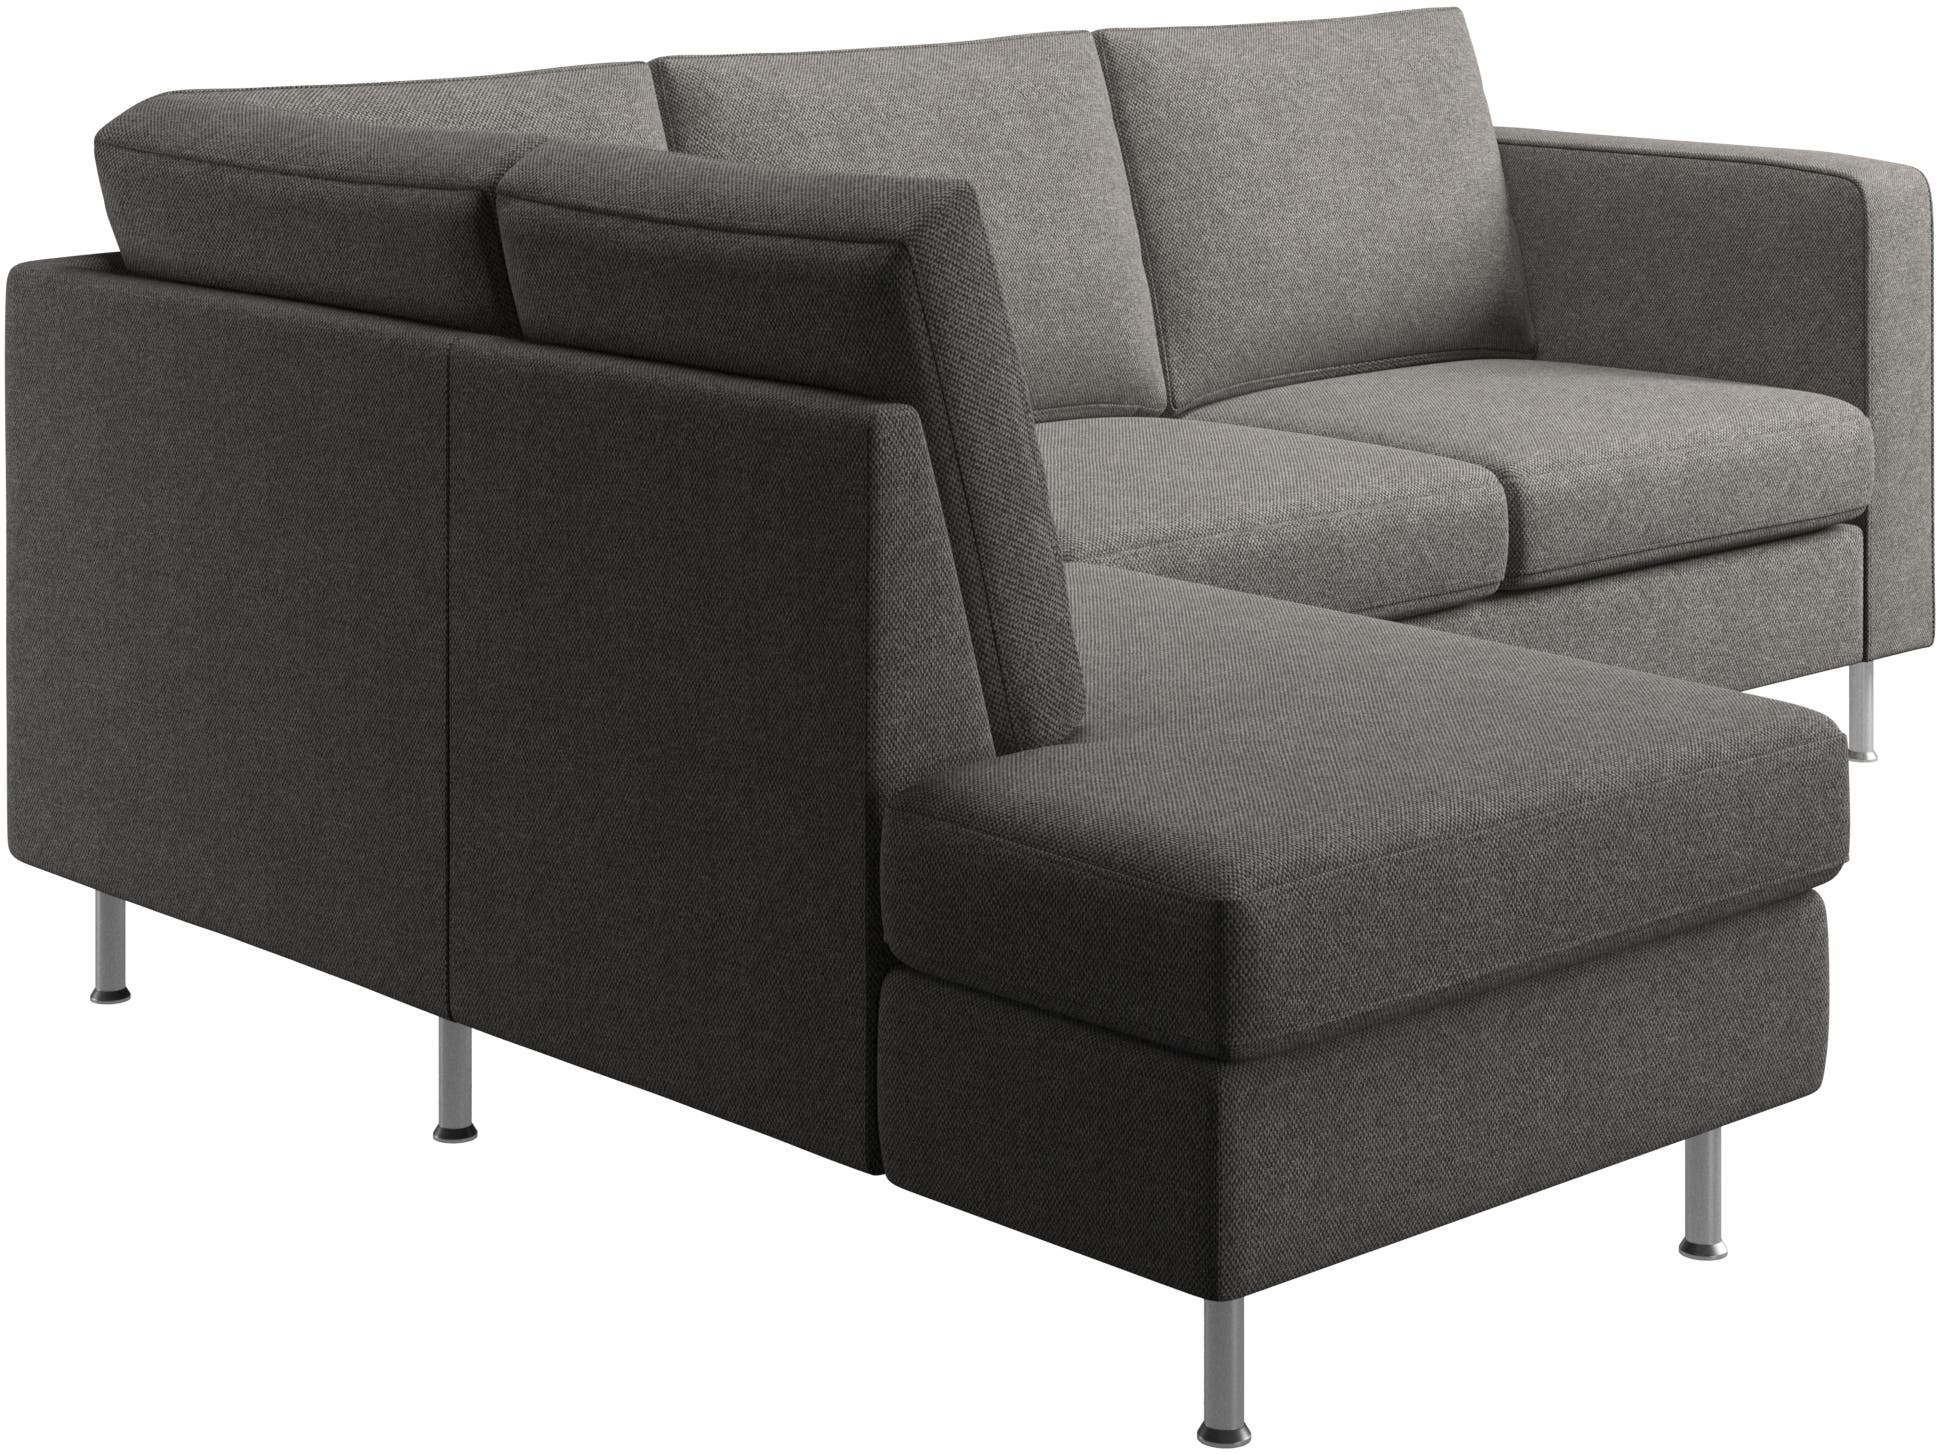 Indivi corner sofa with lounging unit | BoConcept